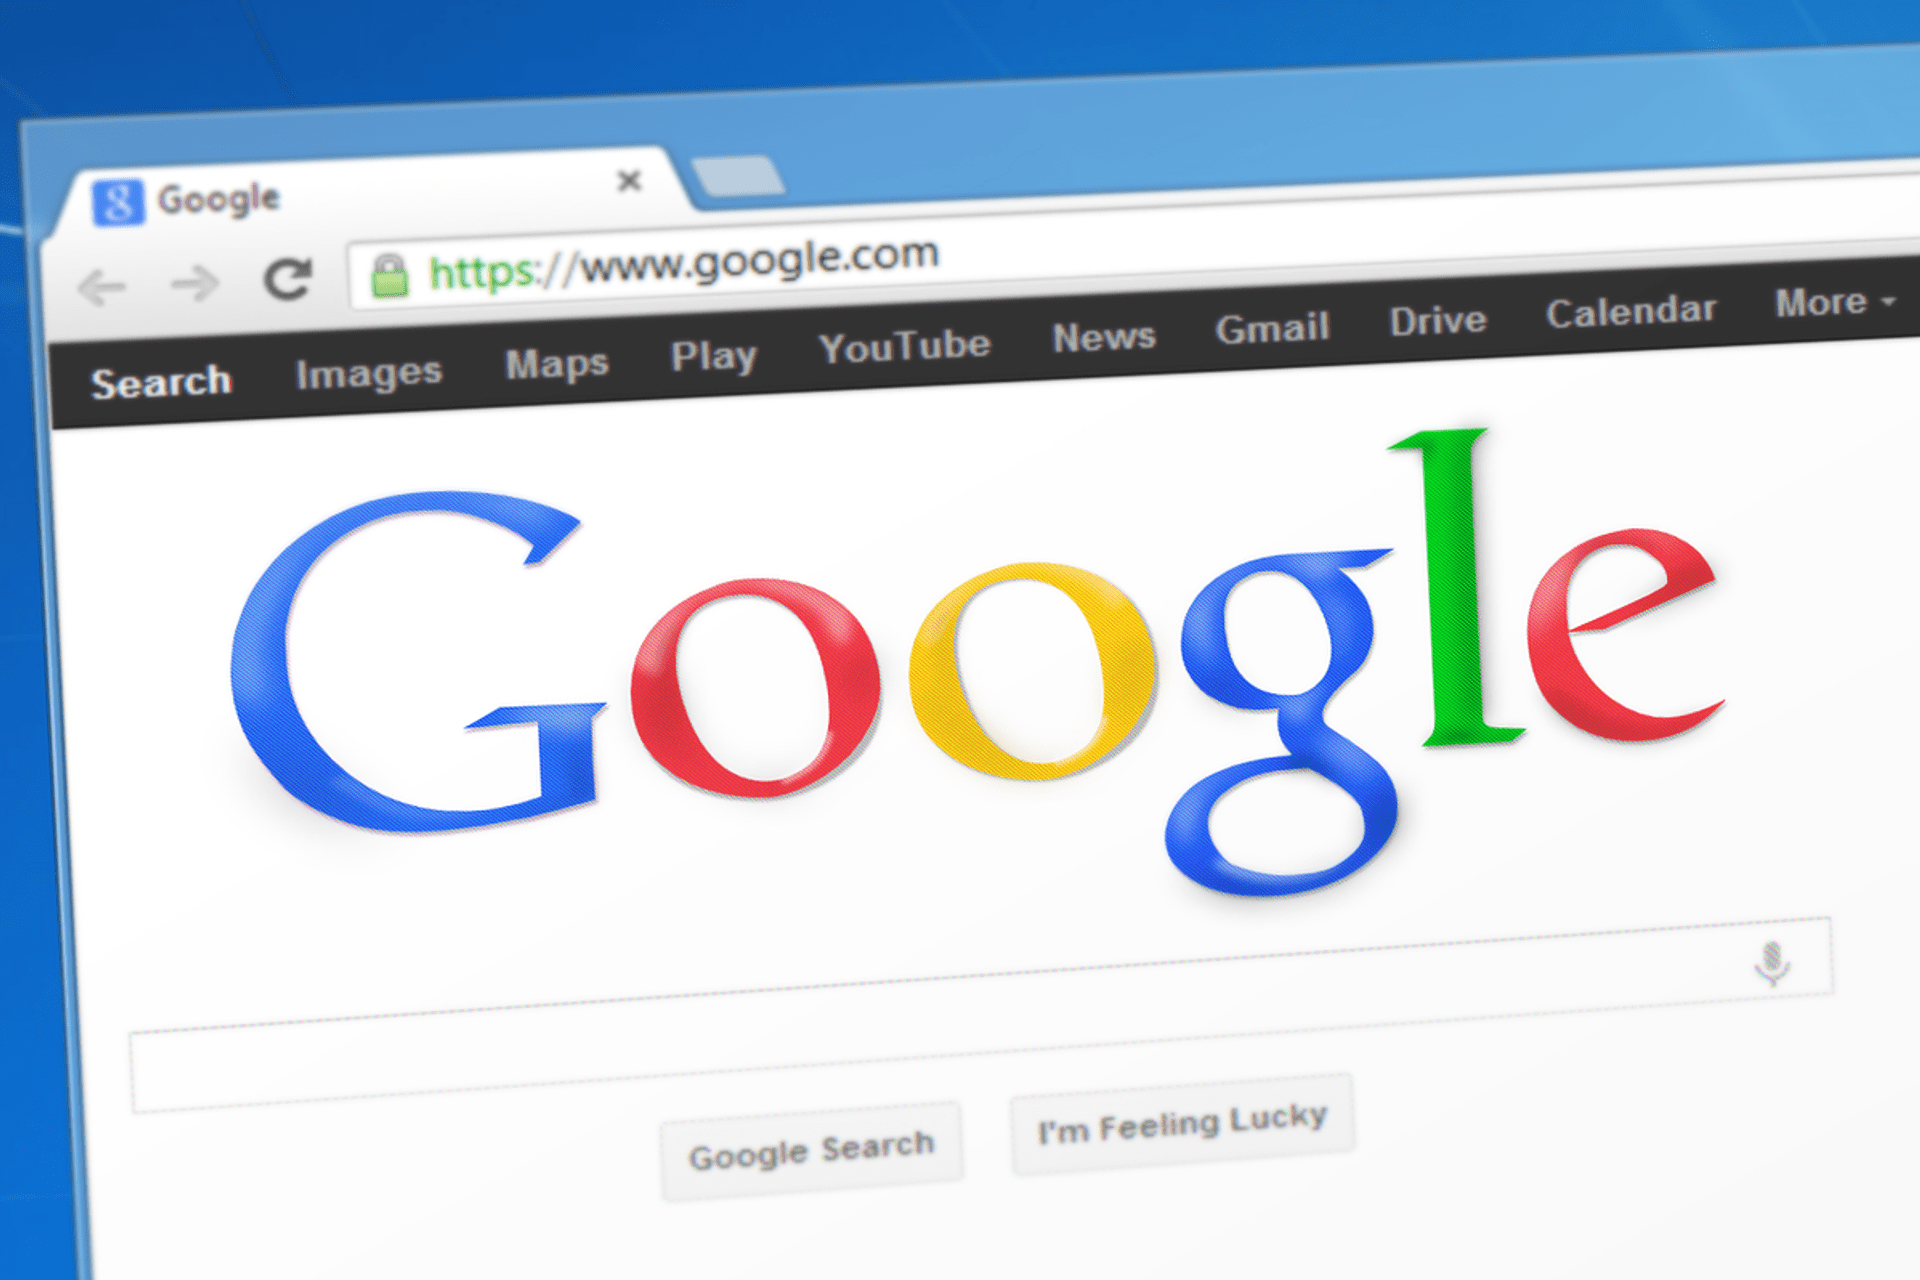 谷歌是互联网上最强大的搜索引擎